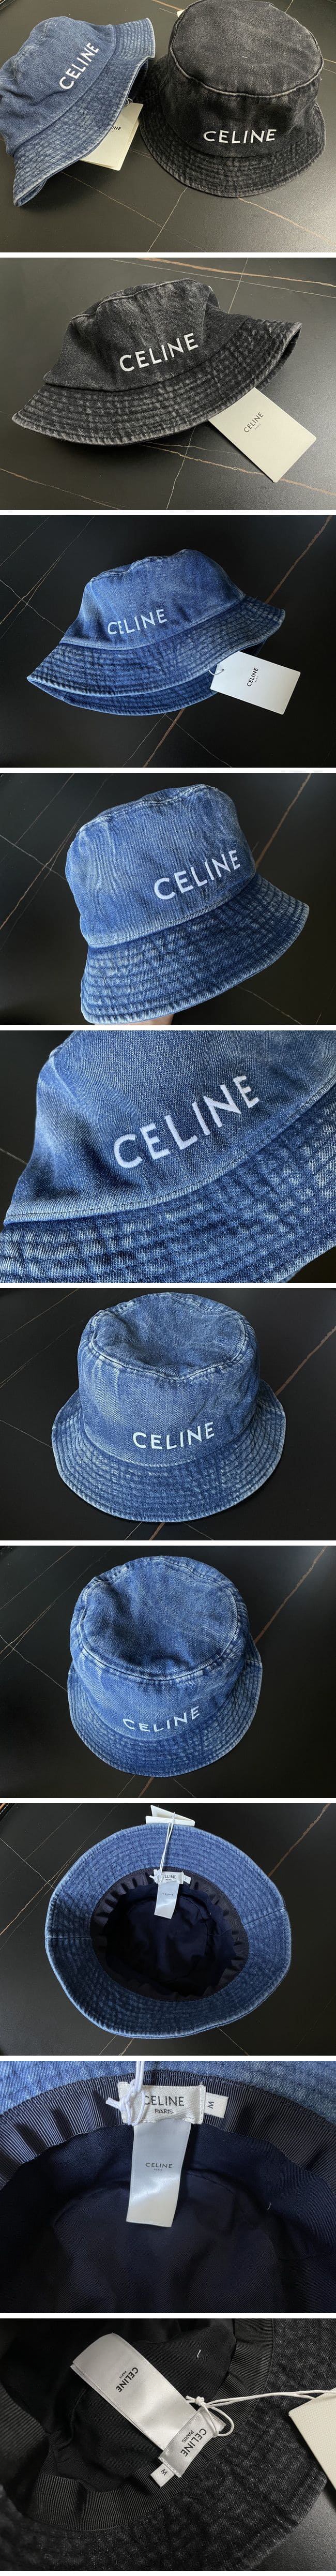 Celine Denim Bucket Hat 2color セリーヌ デニム バケットハット 2カラー